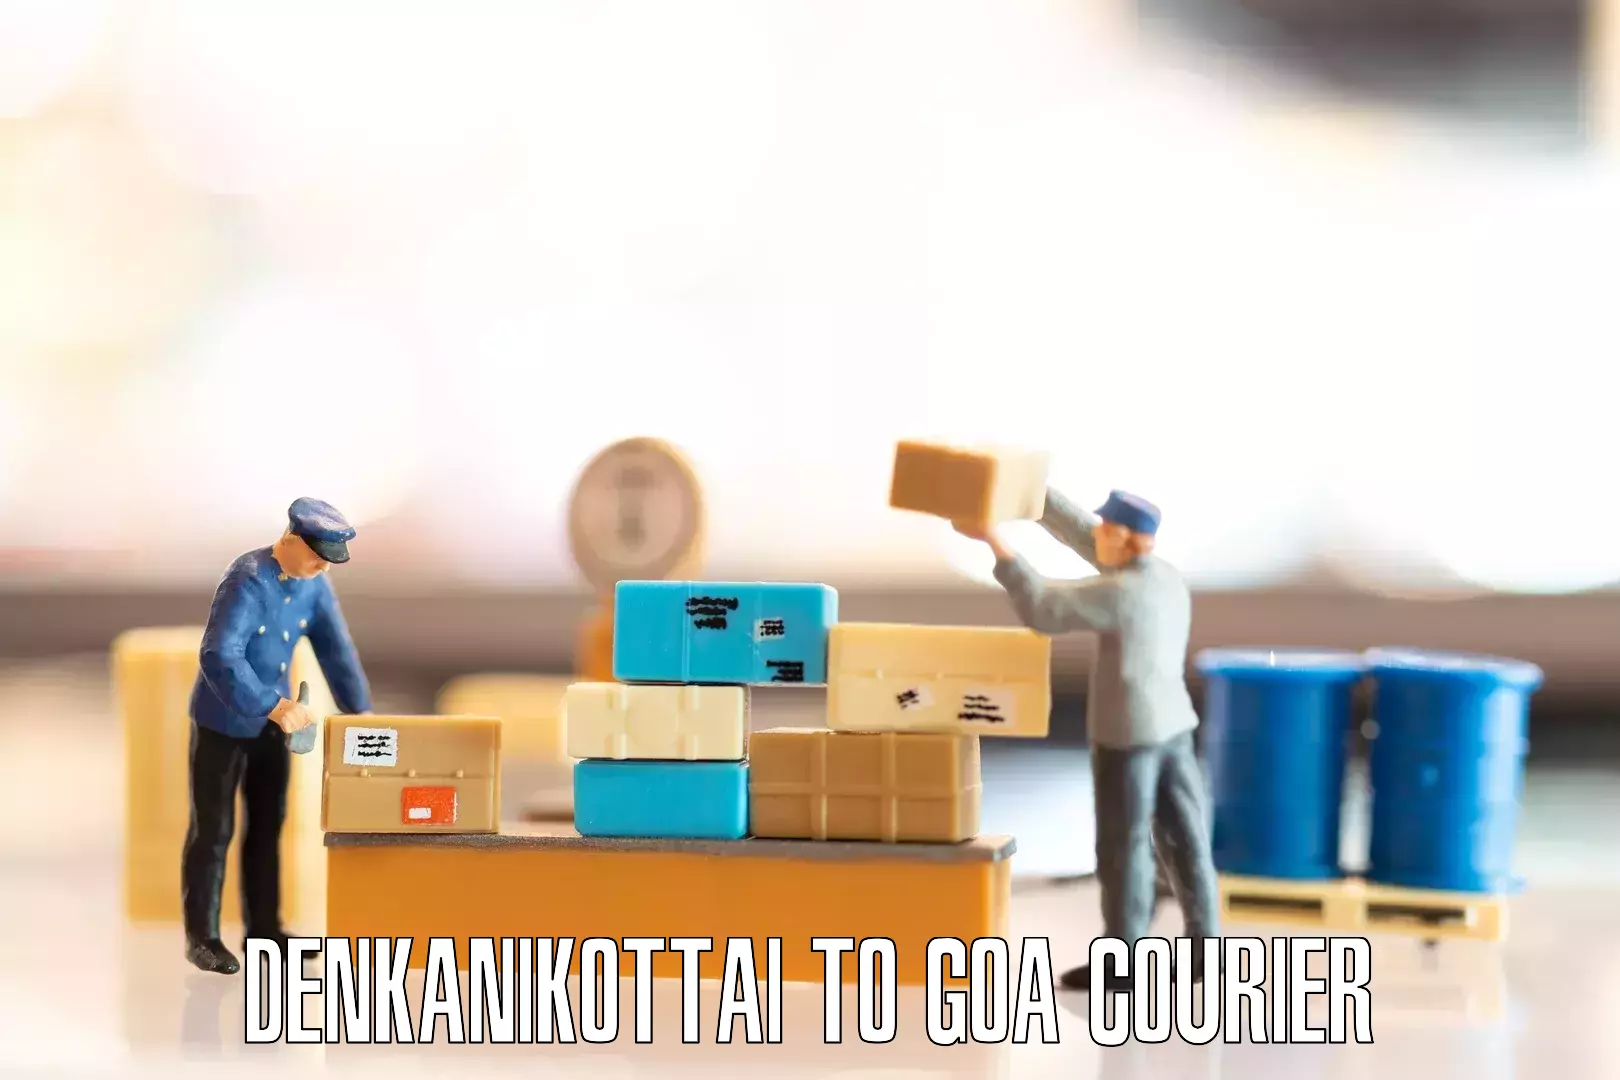 Advanced relocation solutions Denkanikottai to NIT Goa